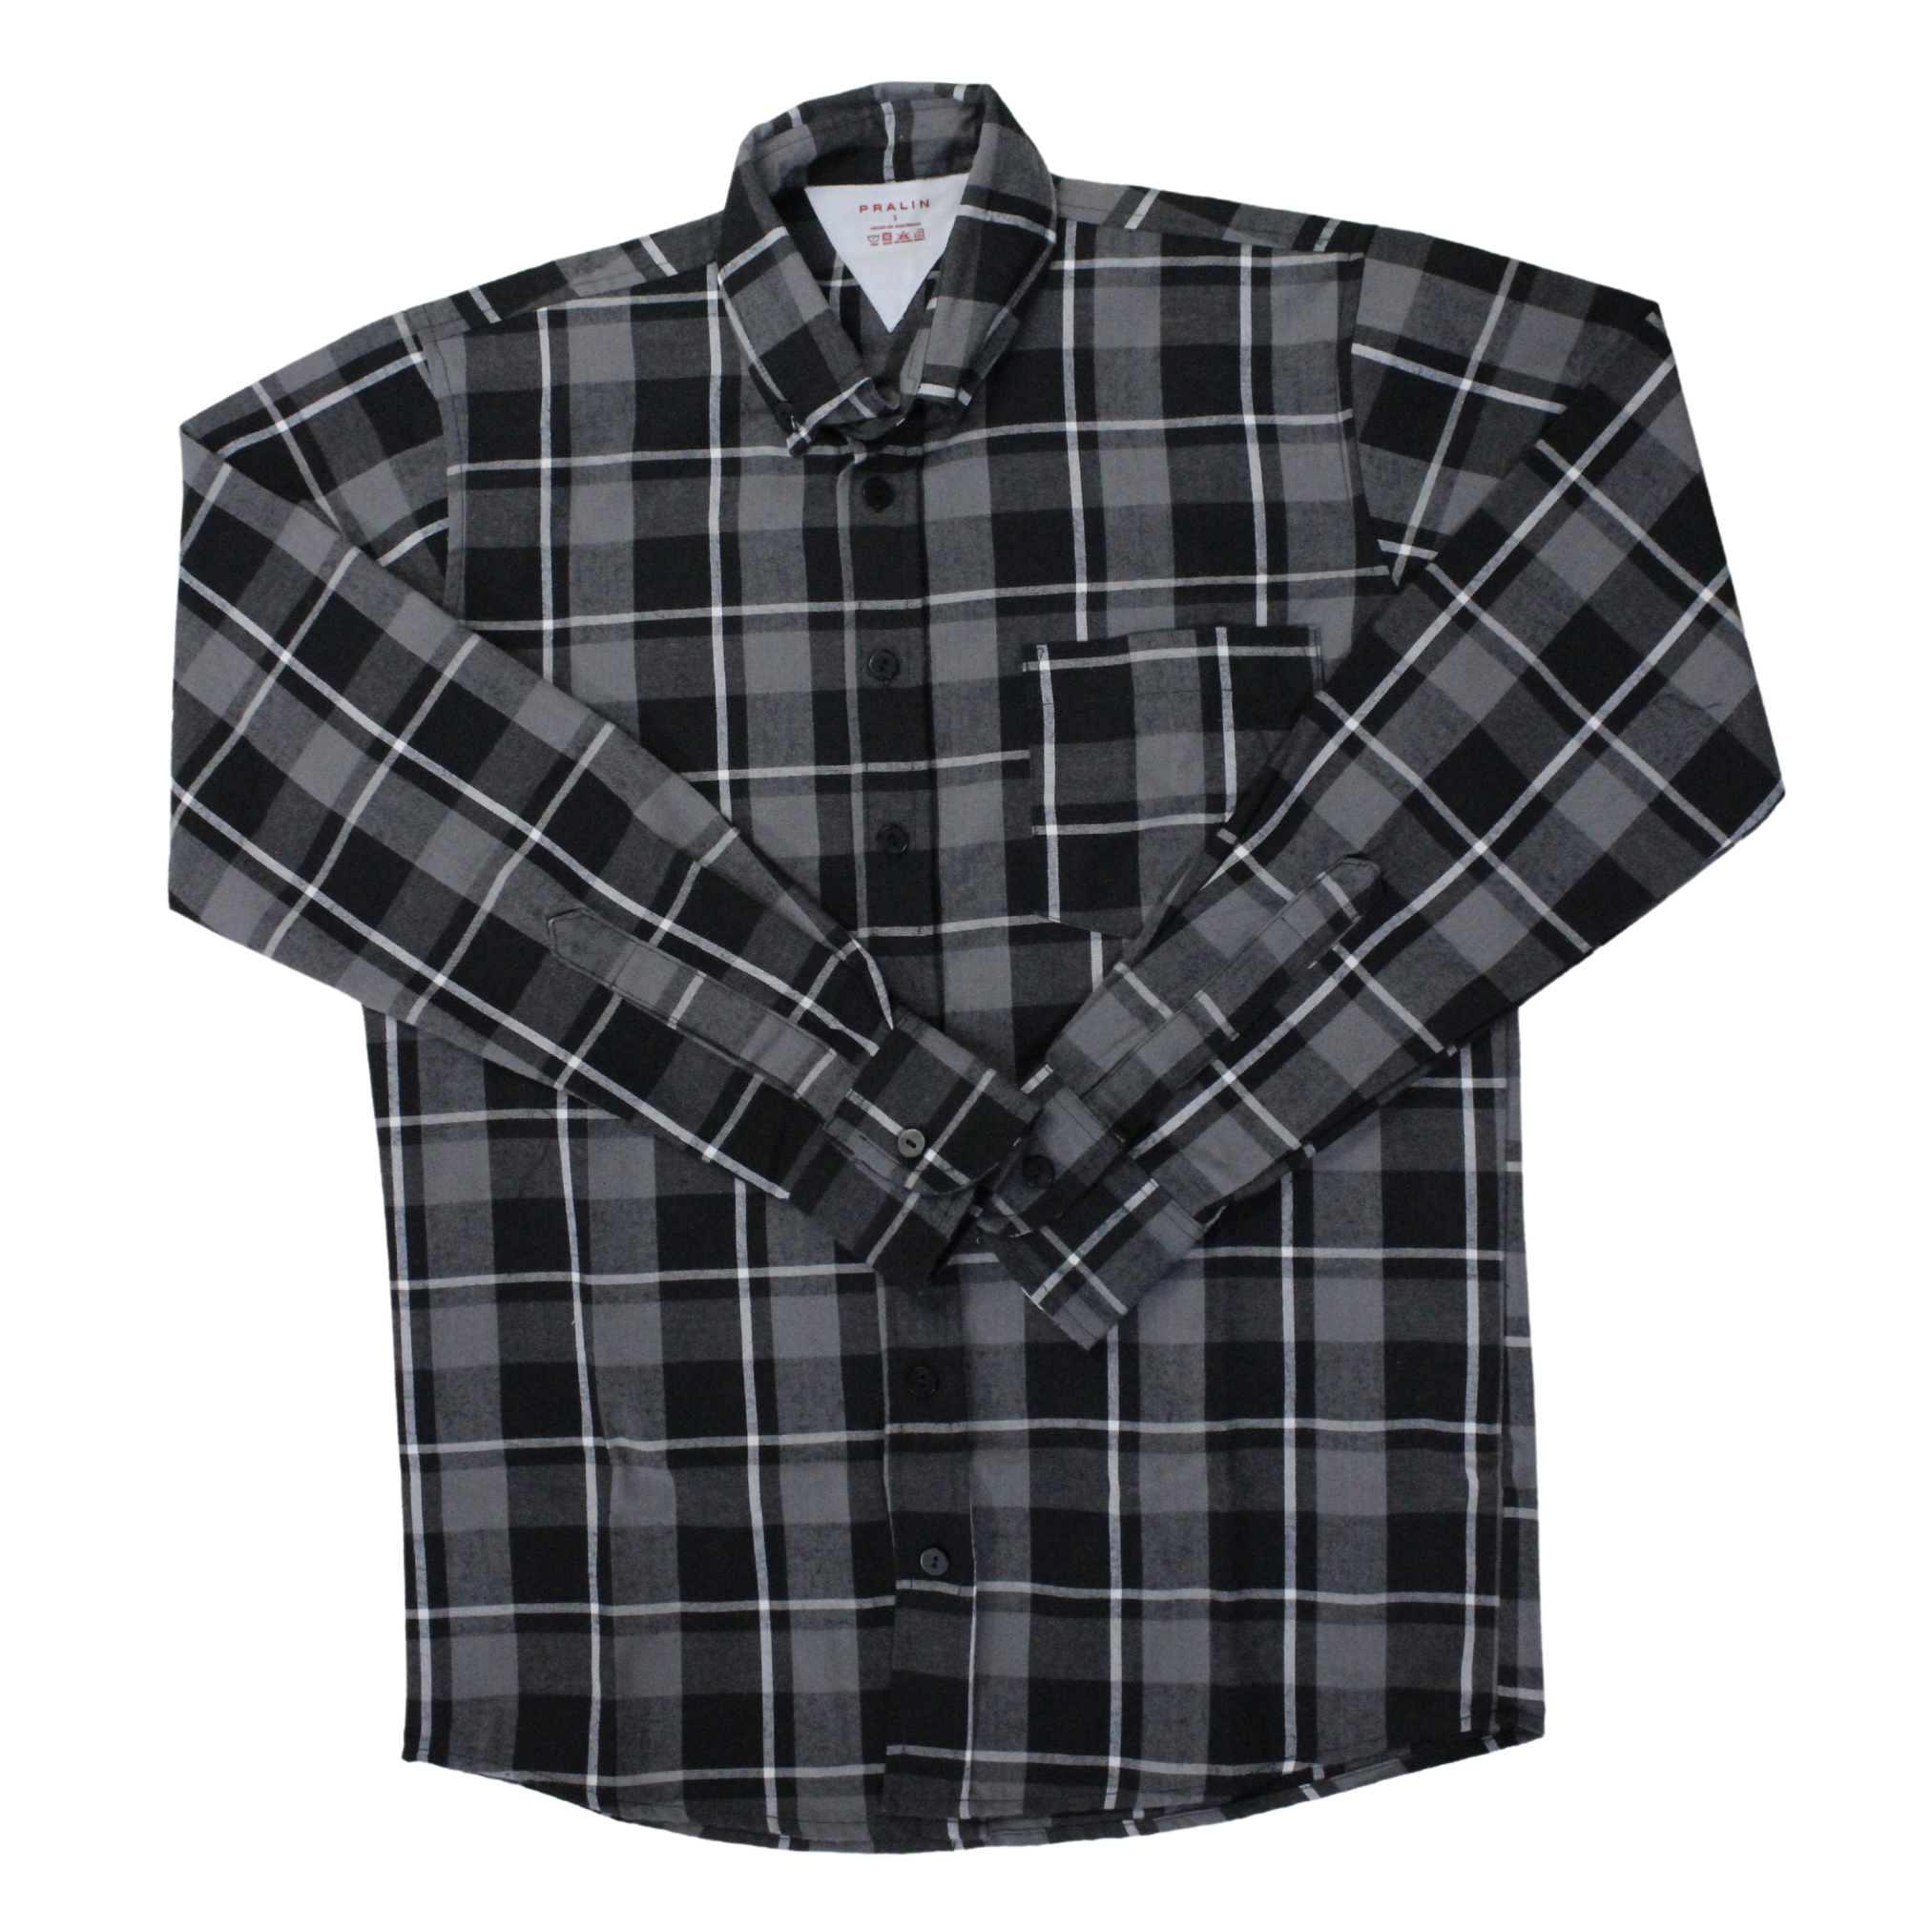 Camisa de Franela Manga Larga Negra/Gris de Cuadros 10033 Hombre